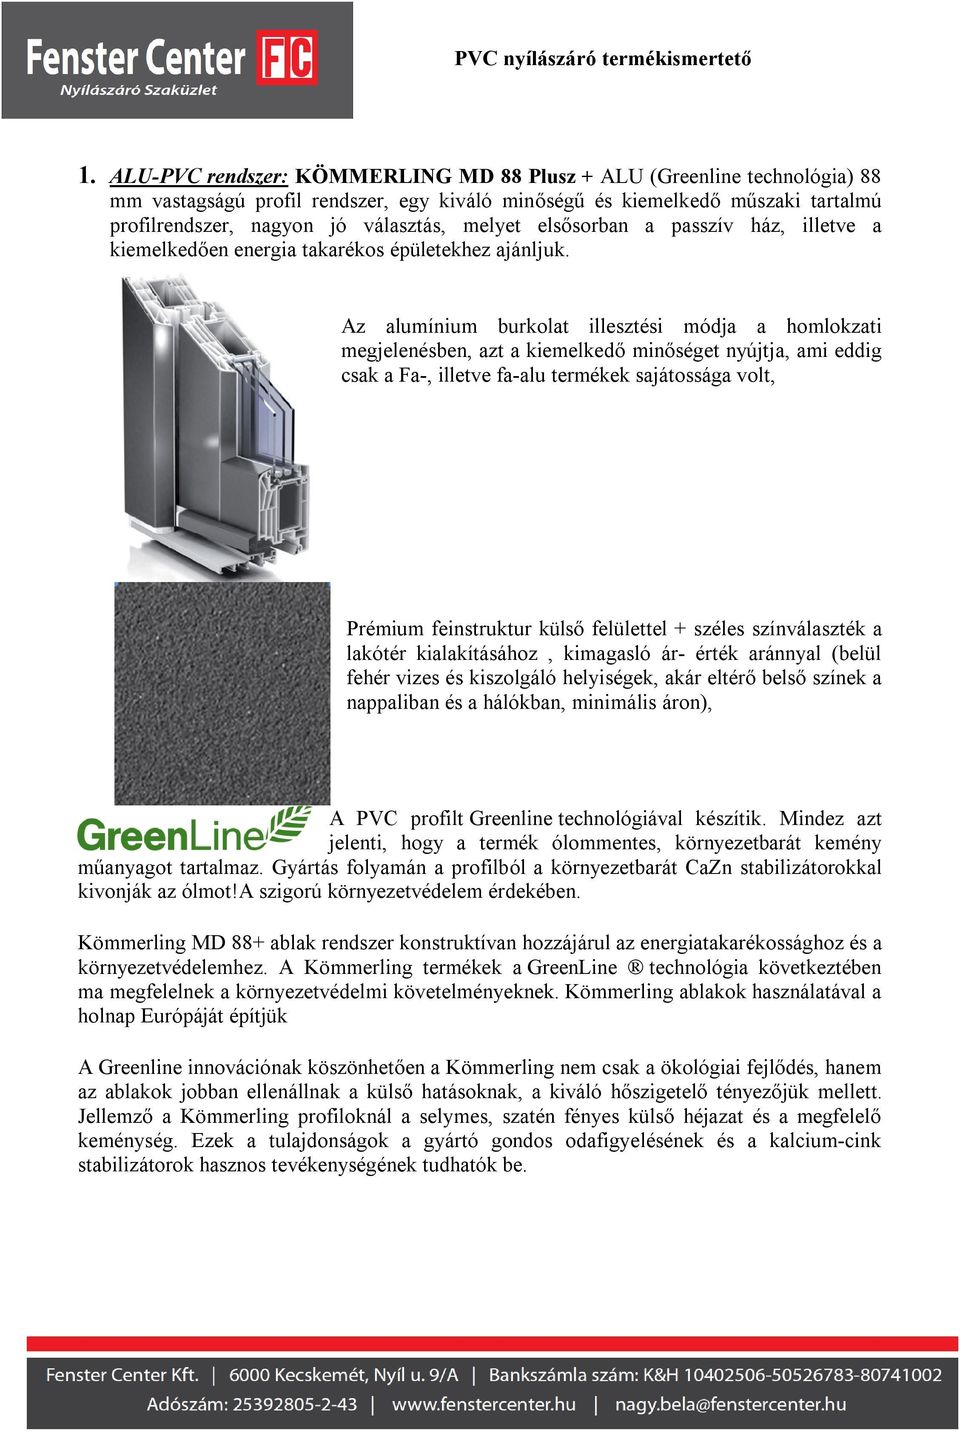 PVC nyílászáró termékismertető - PDF Ingyenes letöltés